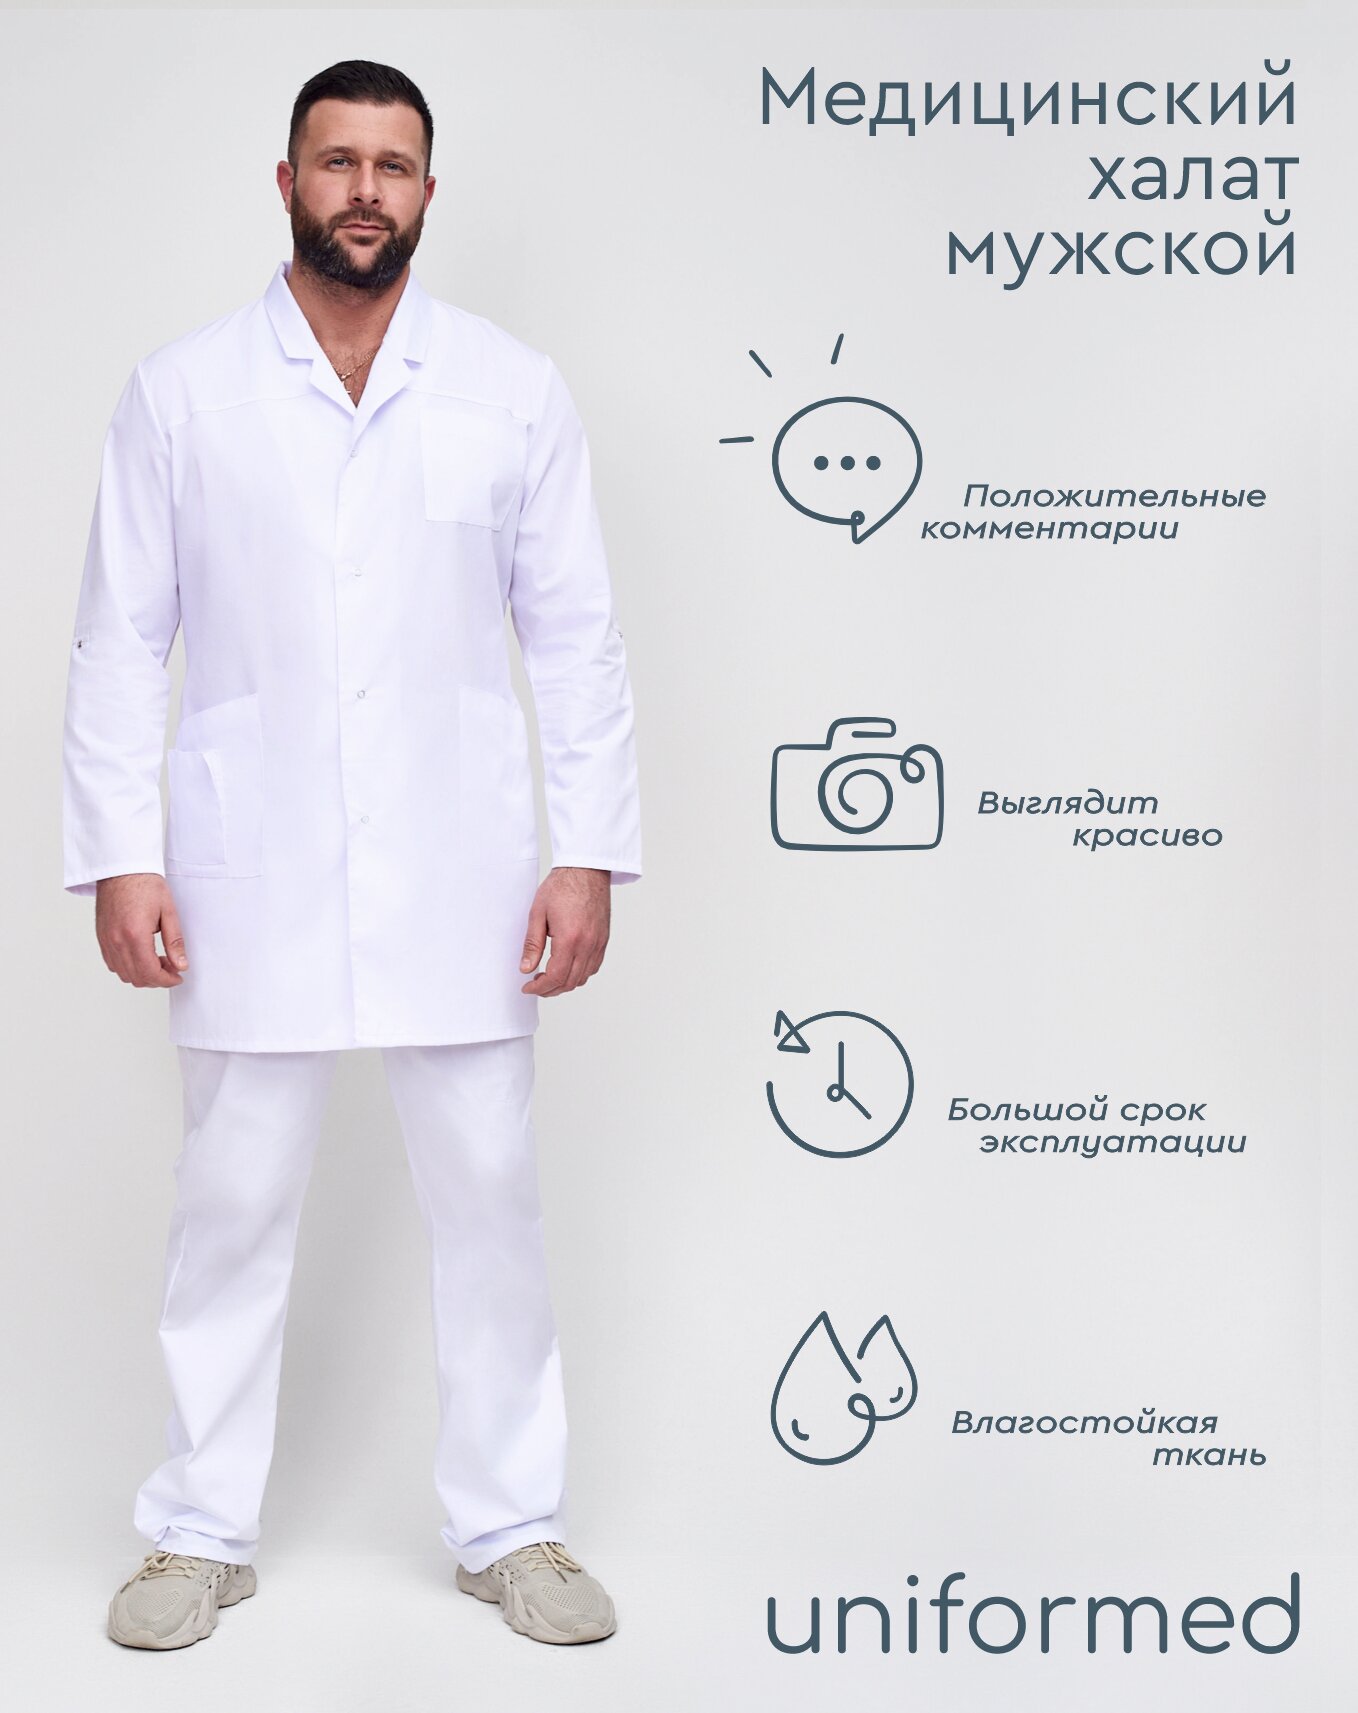 Медицинский мужской халат 129.1.1 Uniformed, ткань тиси, укороченный, рукав длинный, на кнопках, цвет белый, размер 62